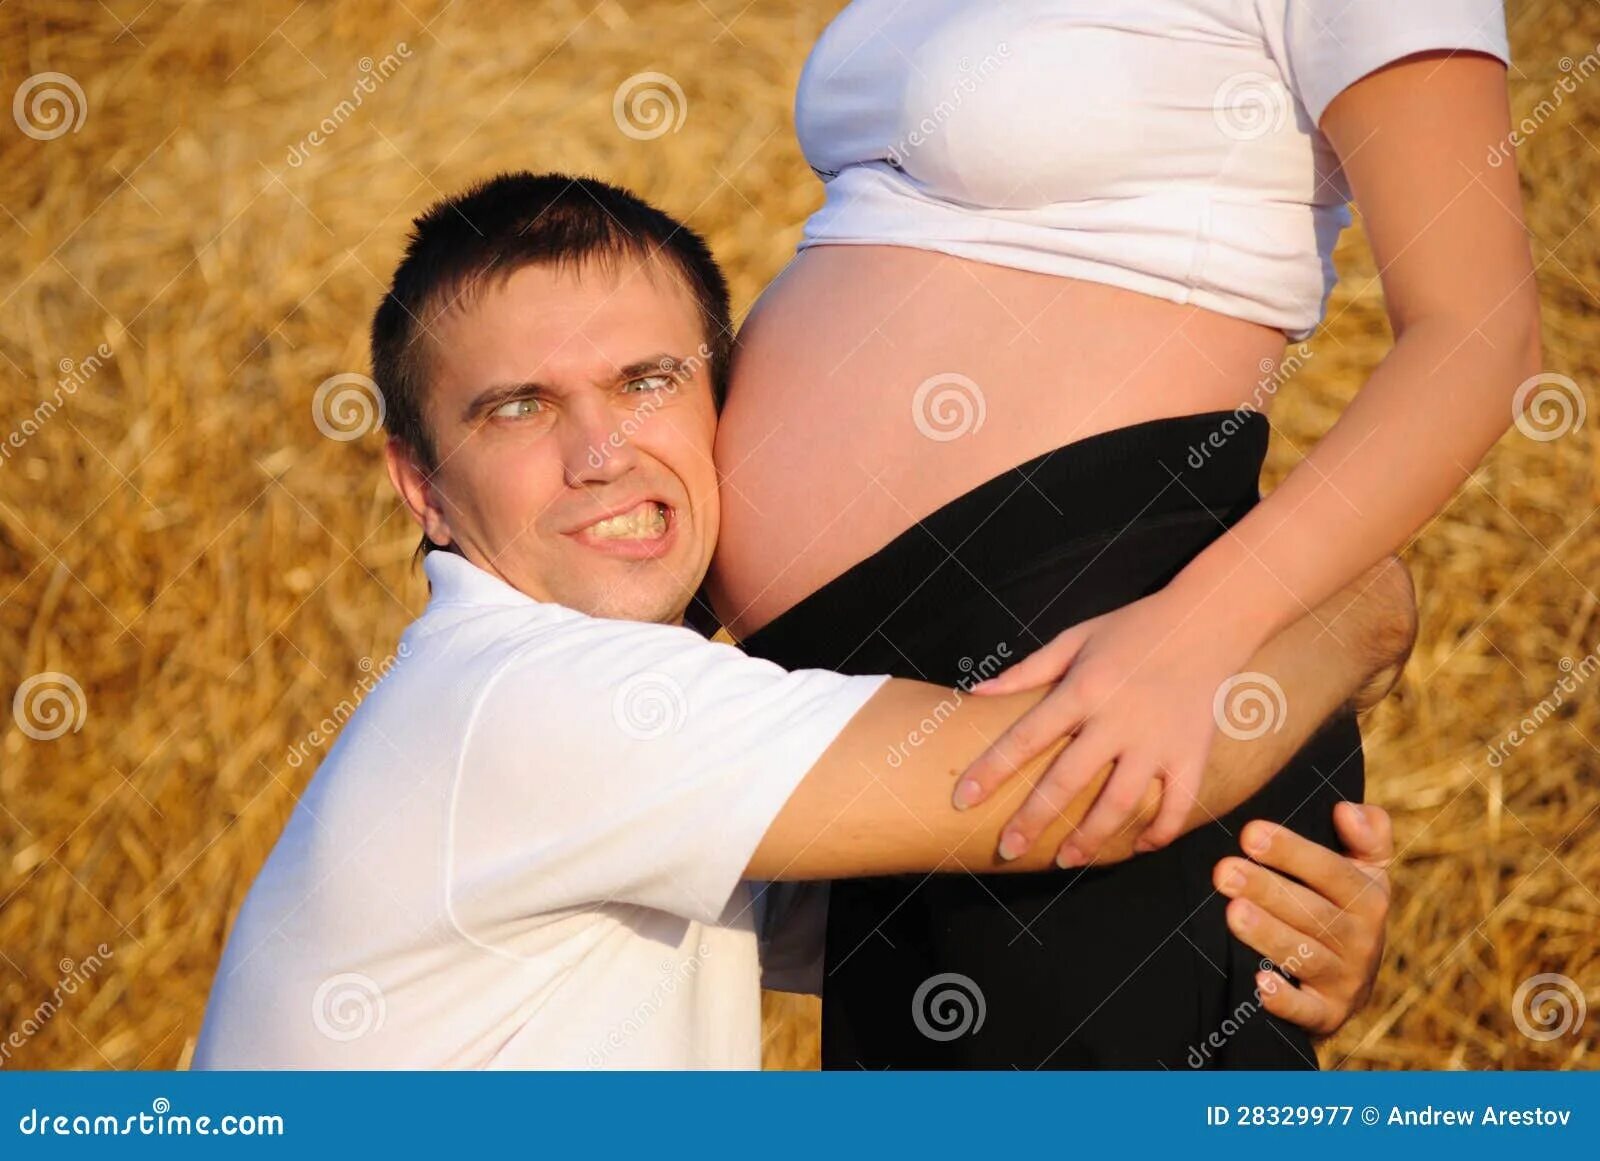 Обнимает беременную. Мужчина обнимает беременную. Обнимает живот. Обнимает живот беременной. Мужчина обнимает животик.